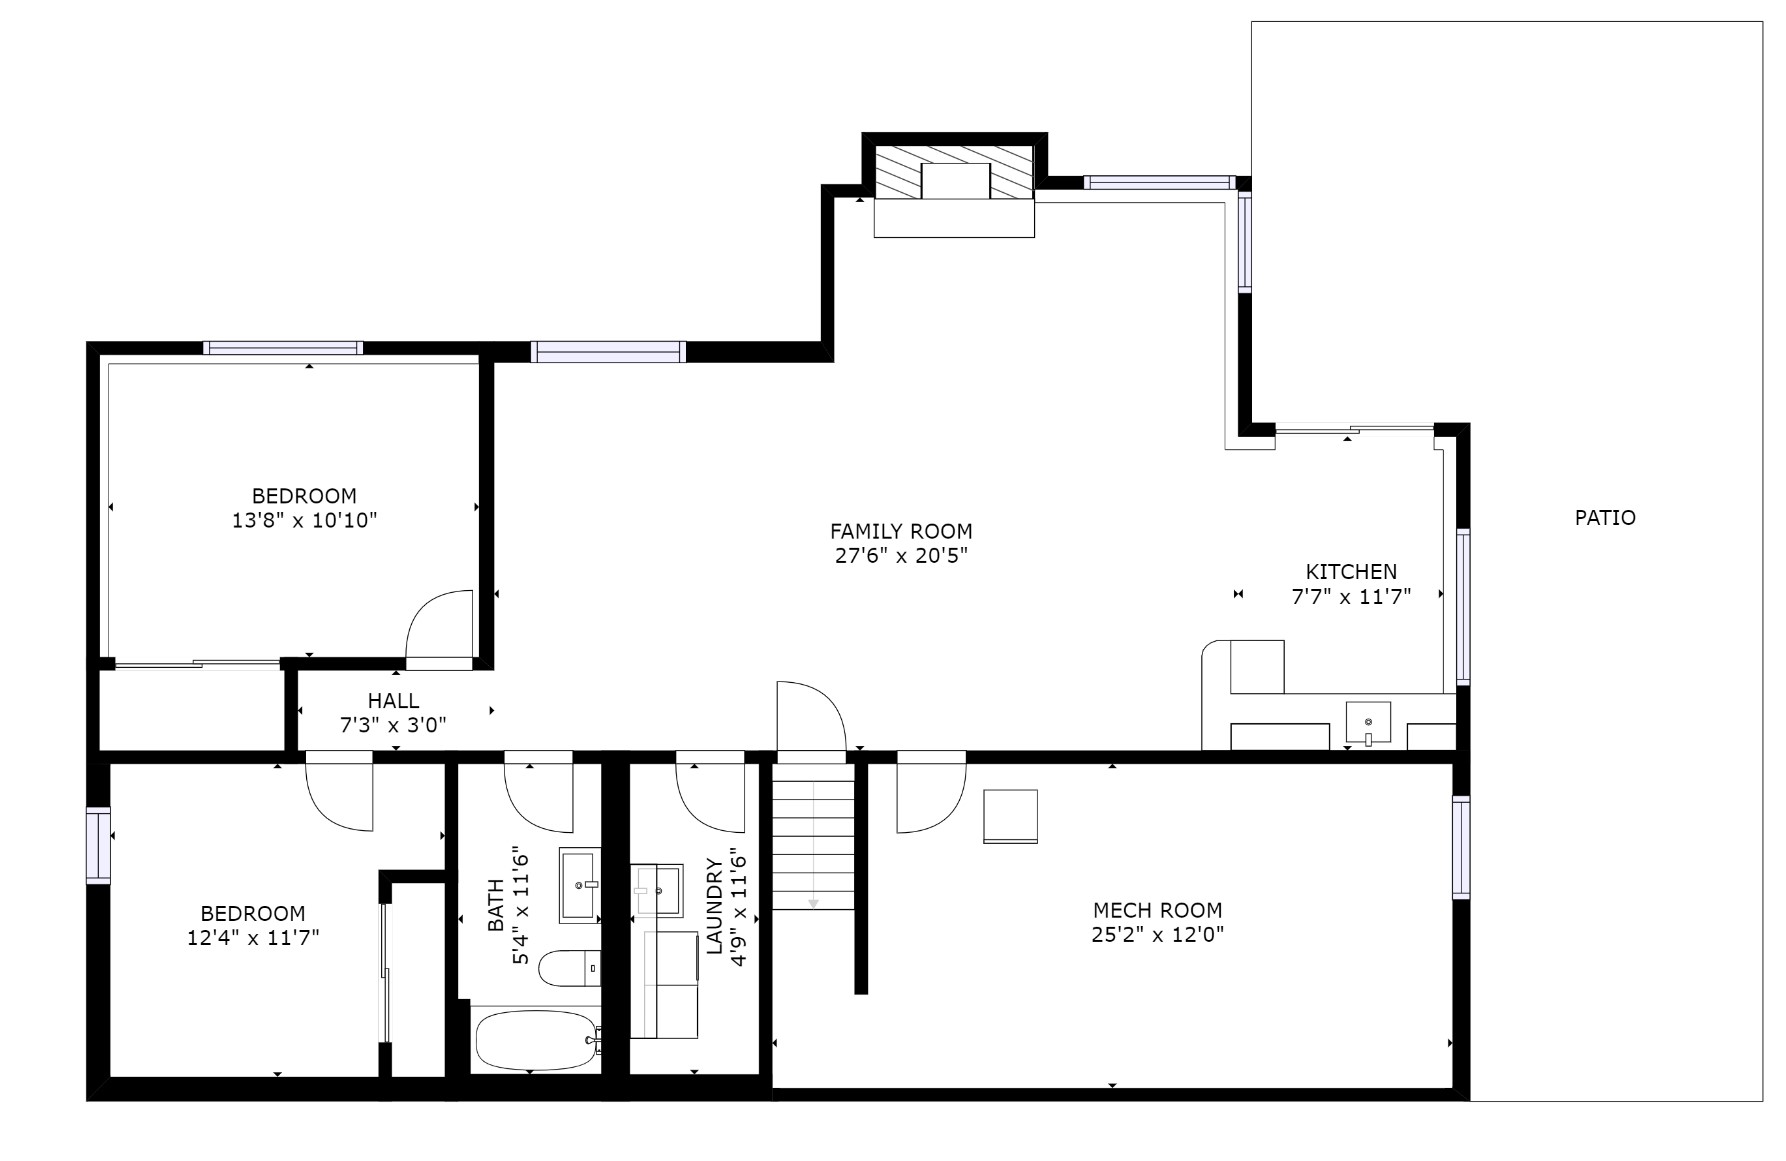 Downstairs Floorplan